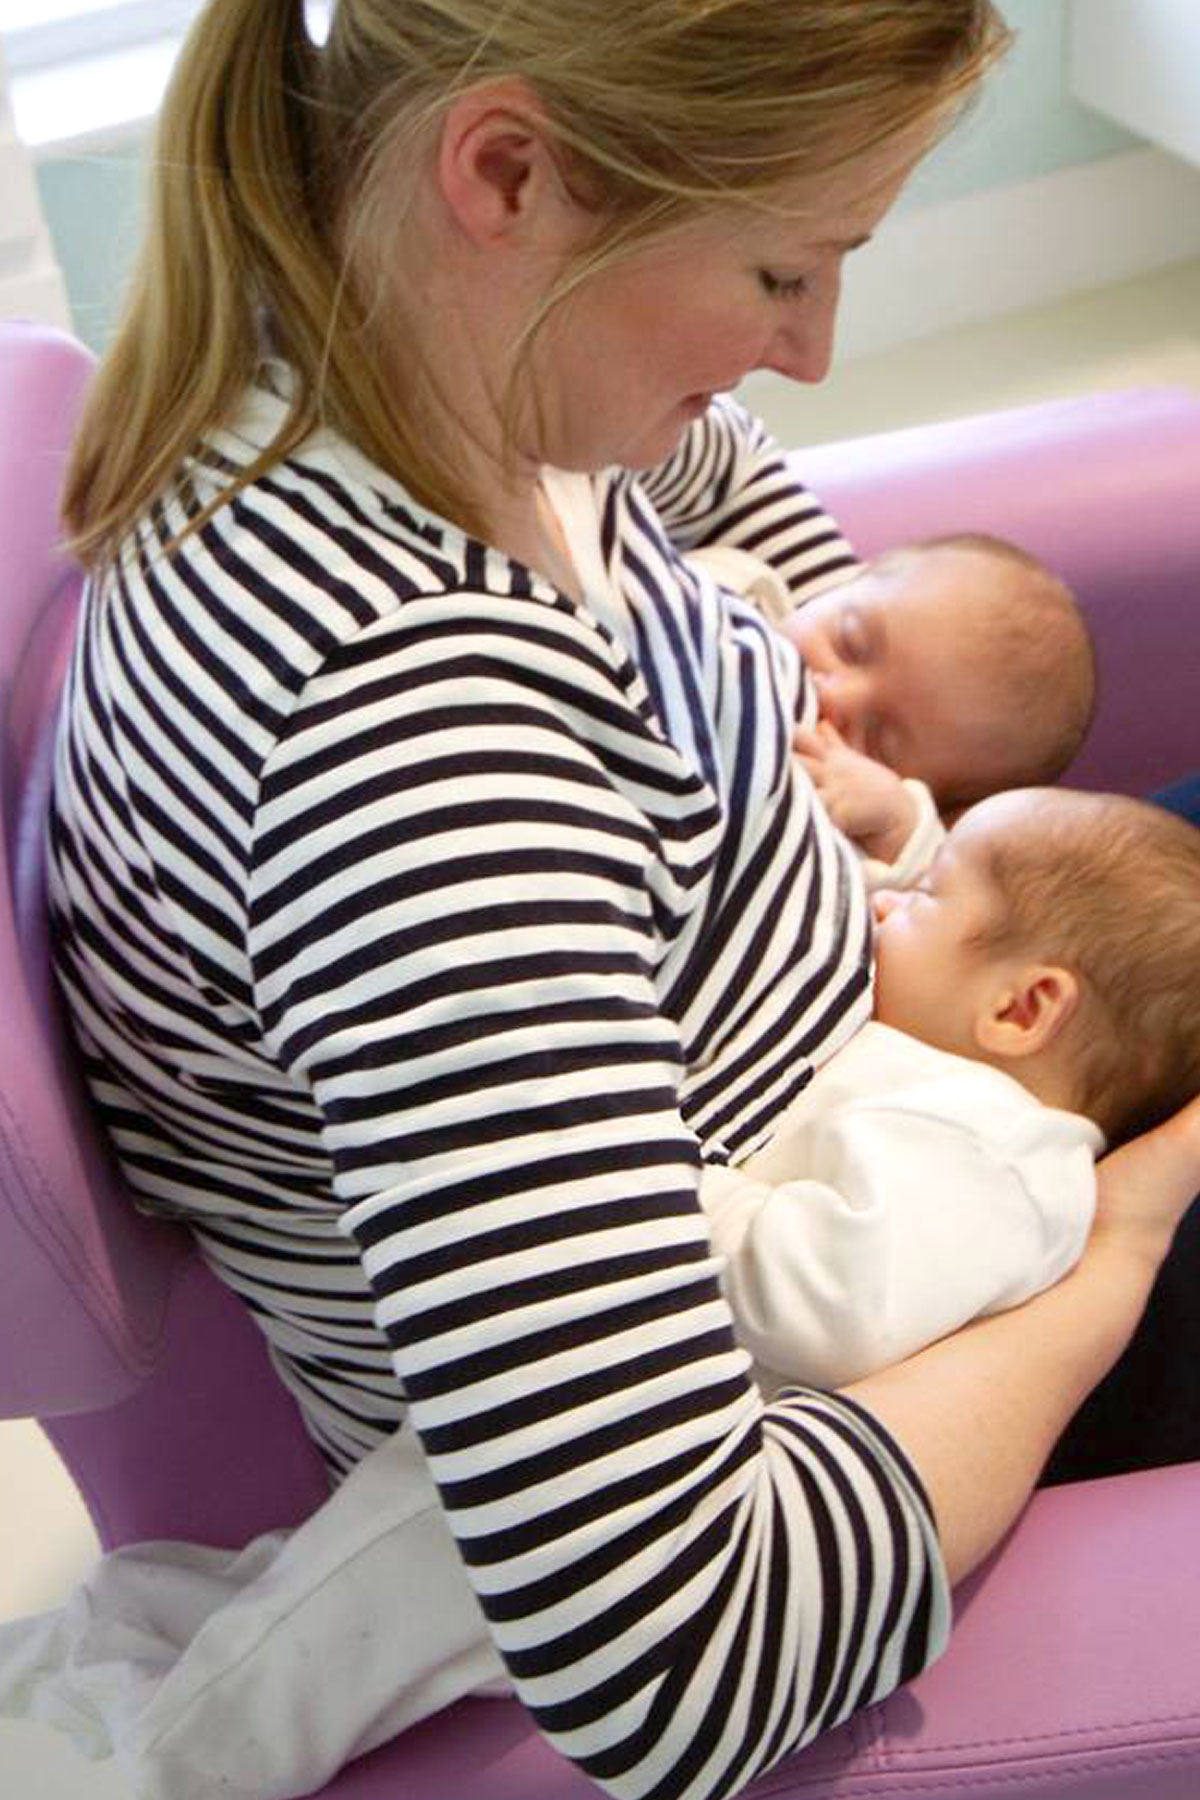 Poltrona per allattamento - Breastfeeding armchair - Stillstuhl - Sillón de lactancia - Fauteuil d'allaitement